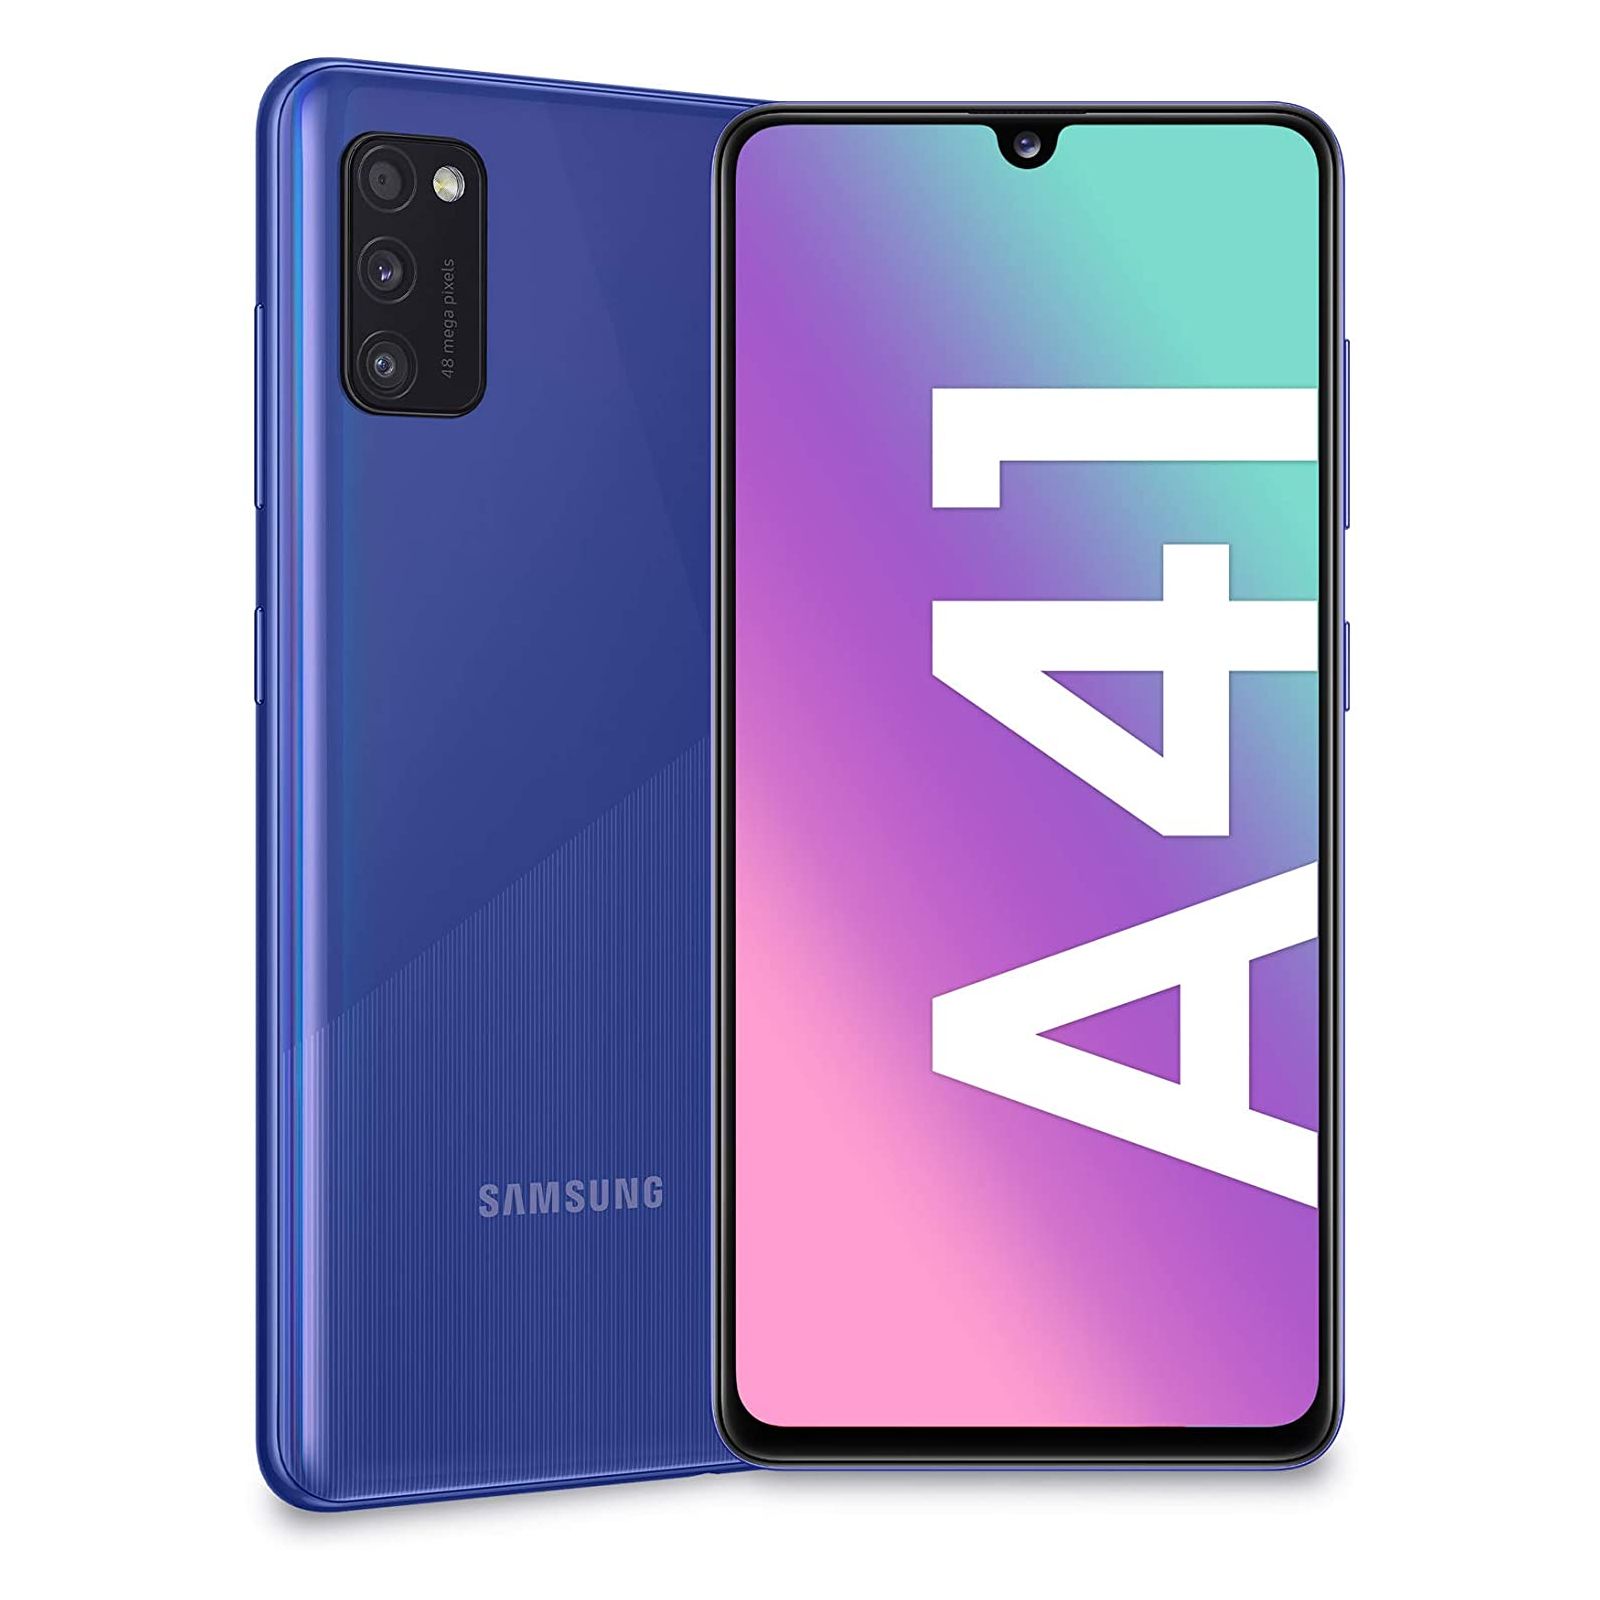 Smartphone Samsung Galaxy A41 A415 Dual Sim 4GB RAM 64GB blue